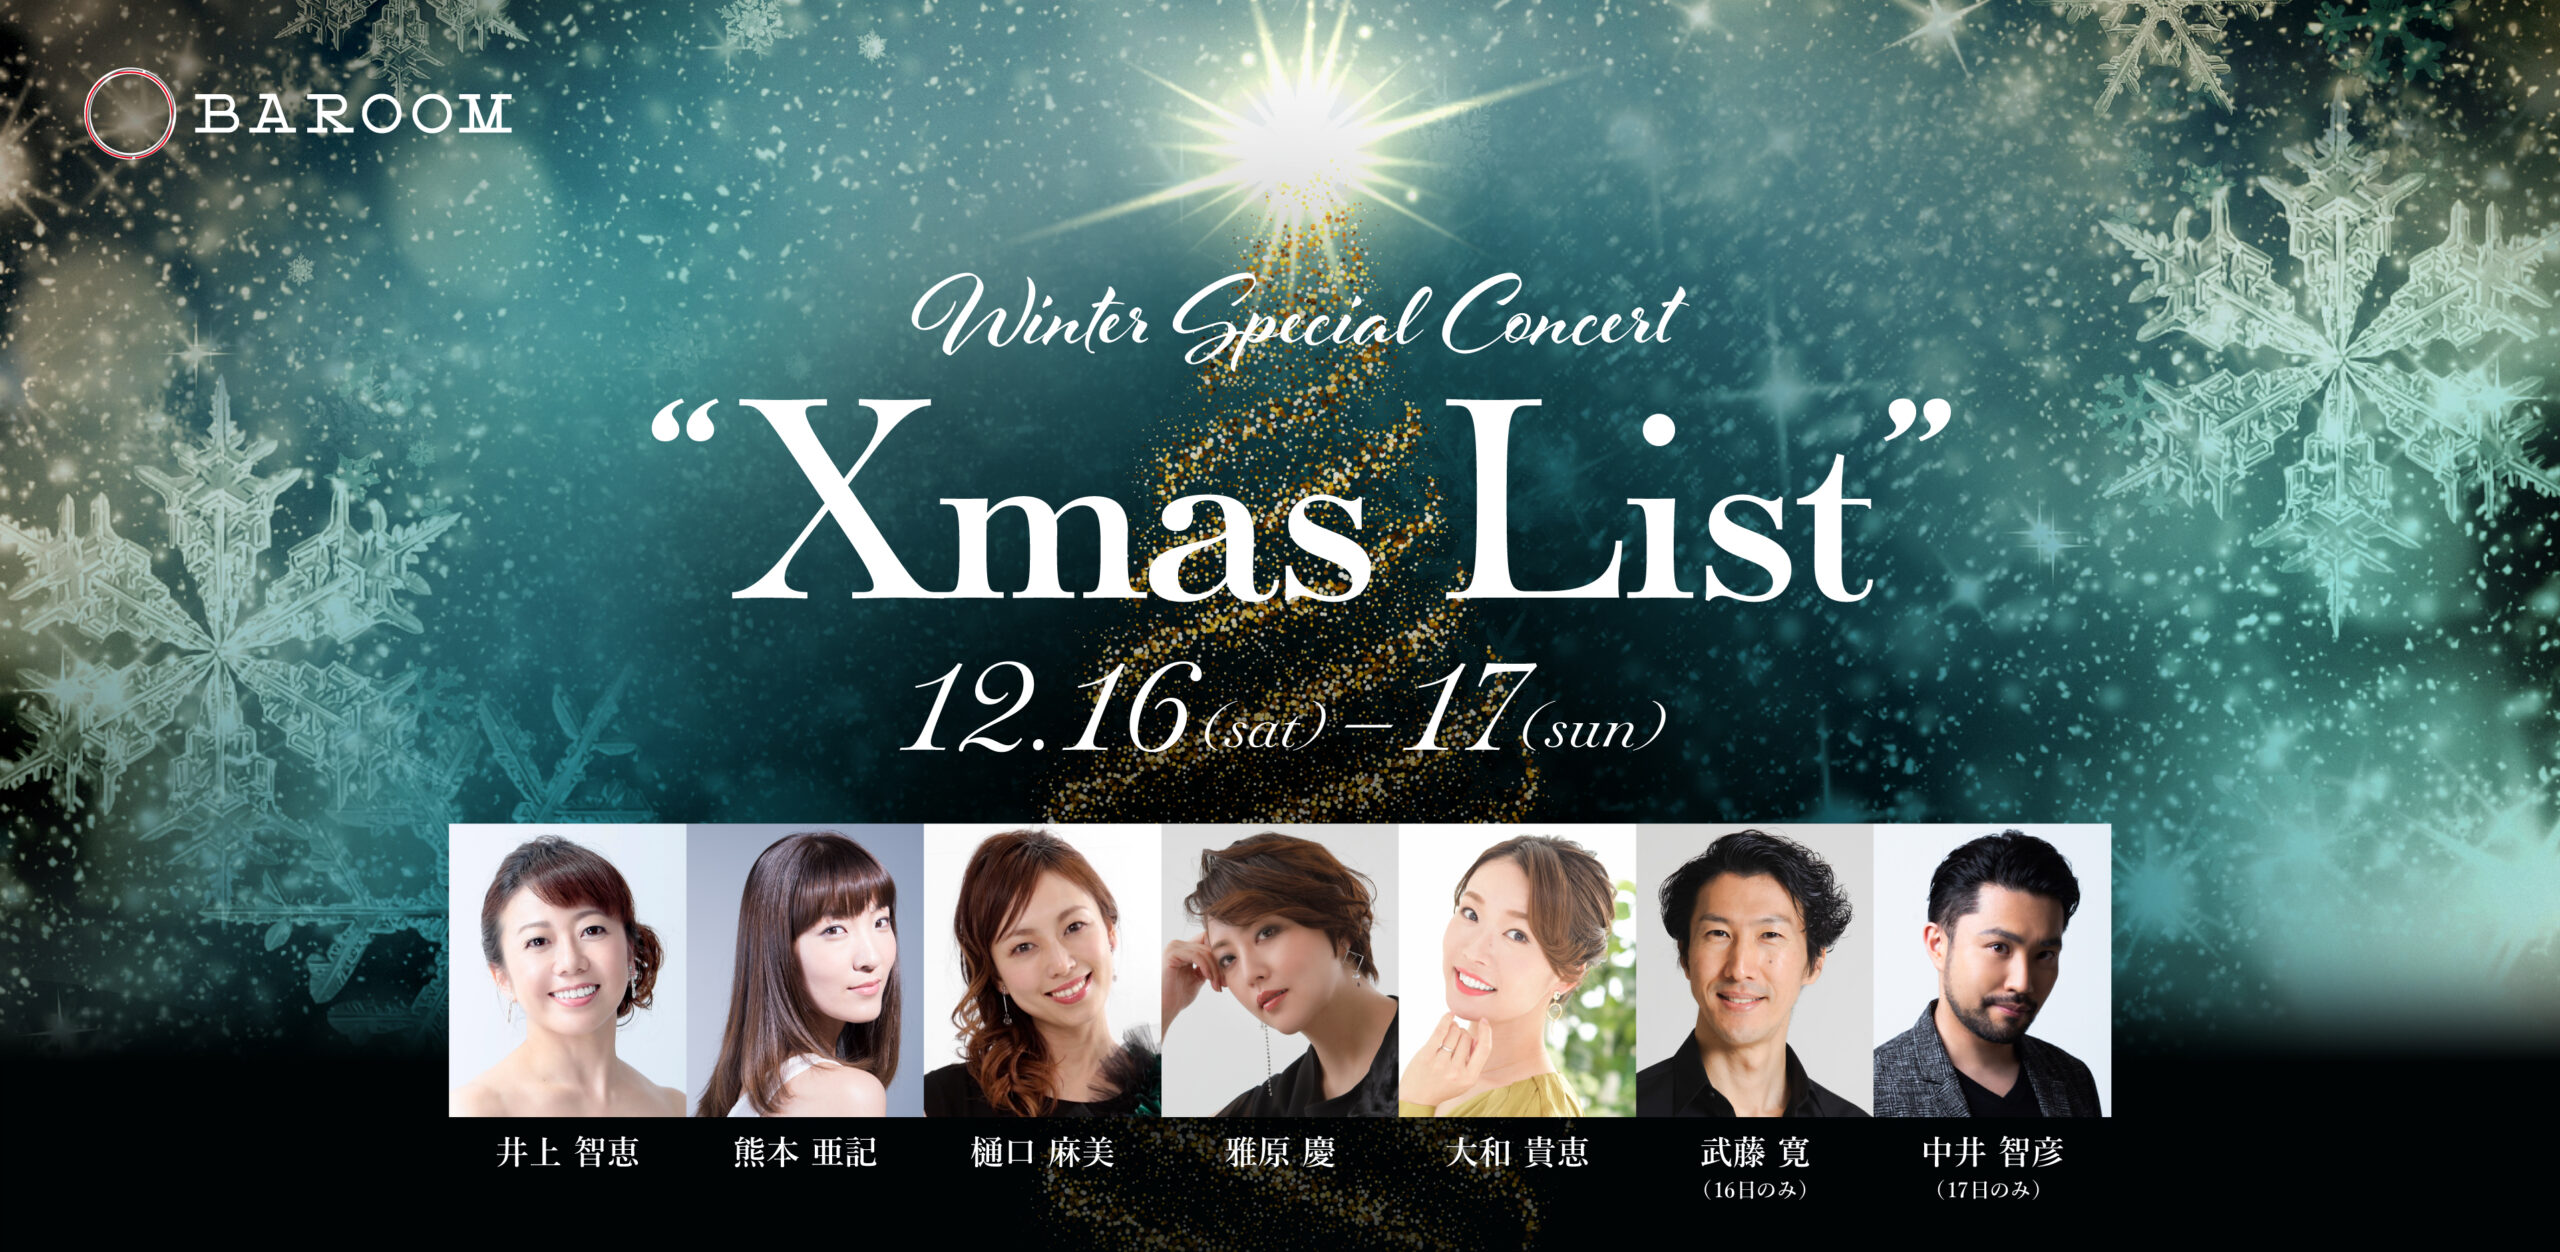 Winter Special Concert “Xmas List” | BAROOM